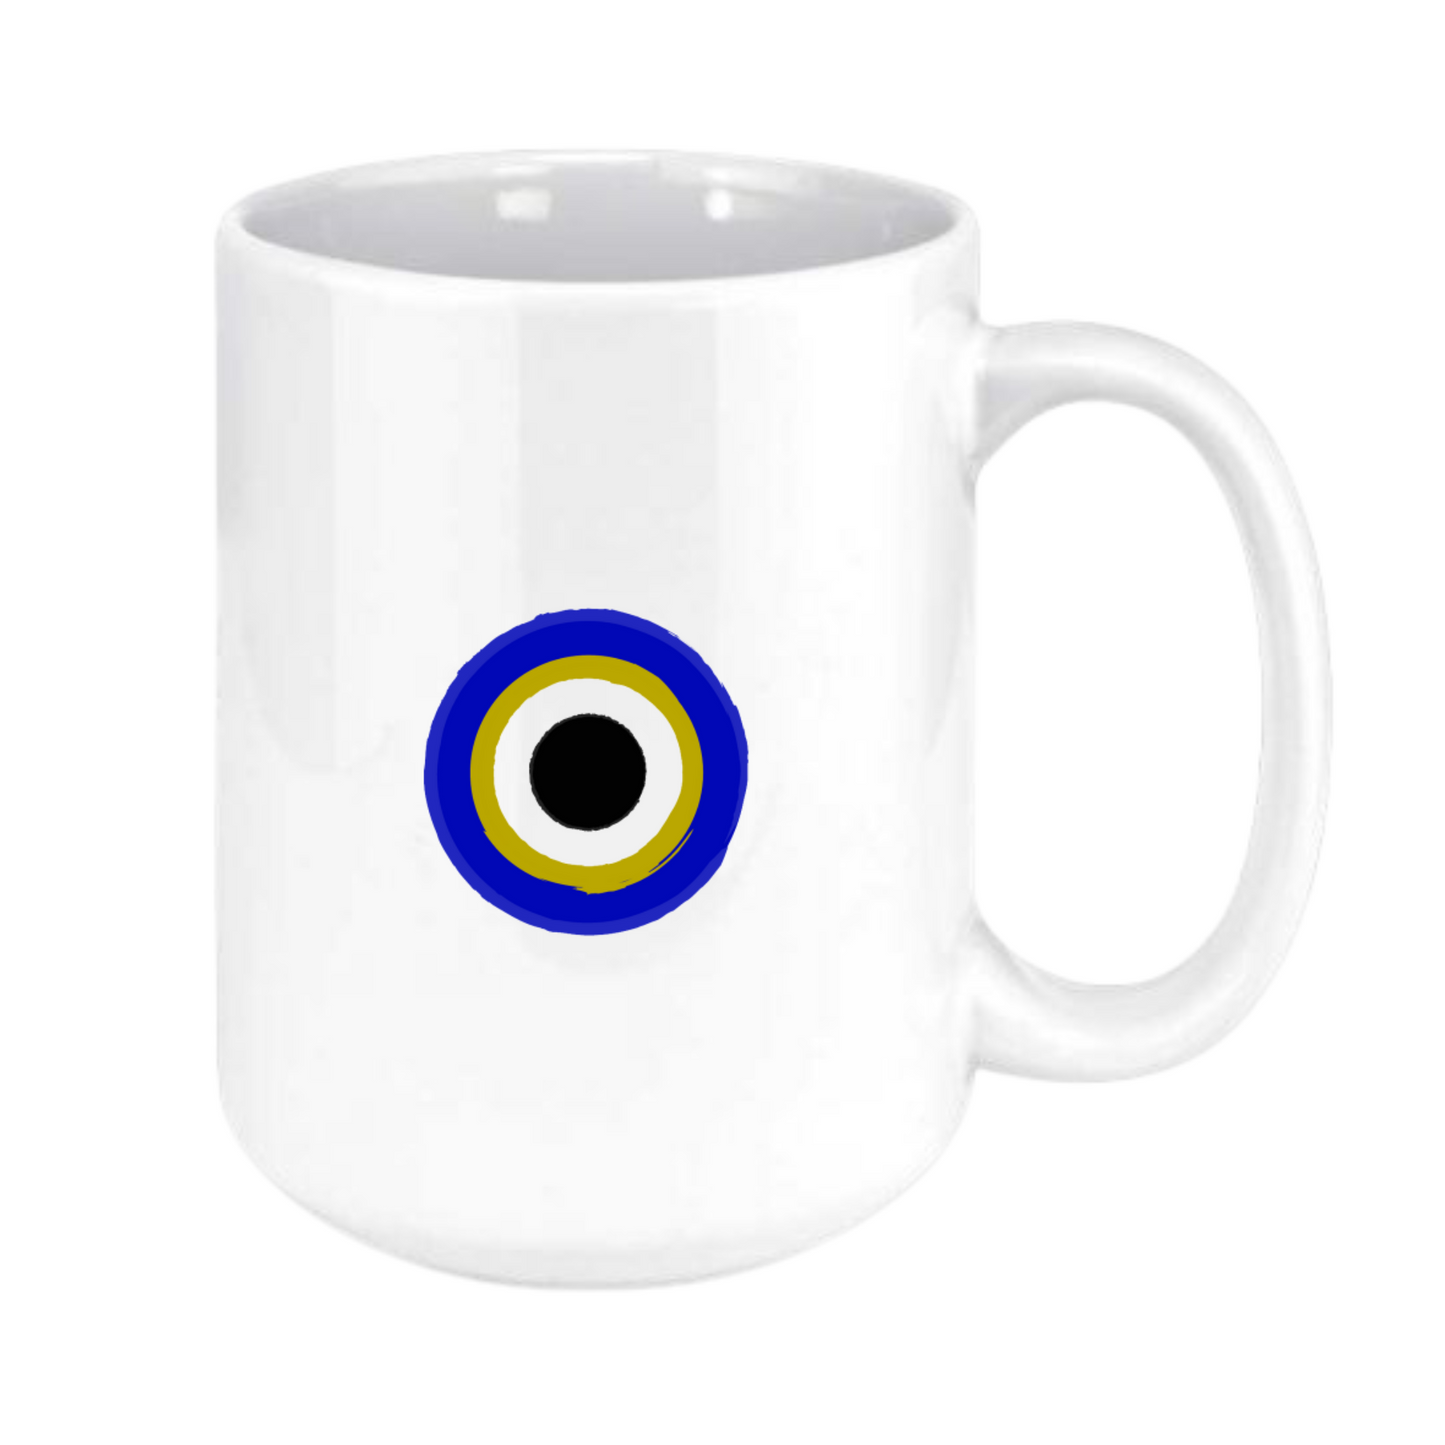 Evil eye mug